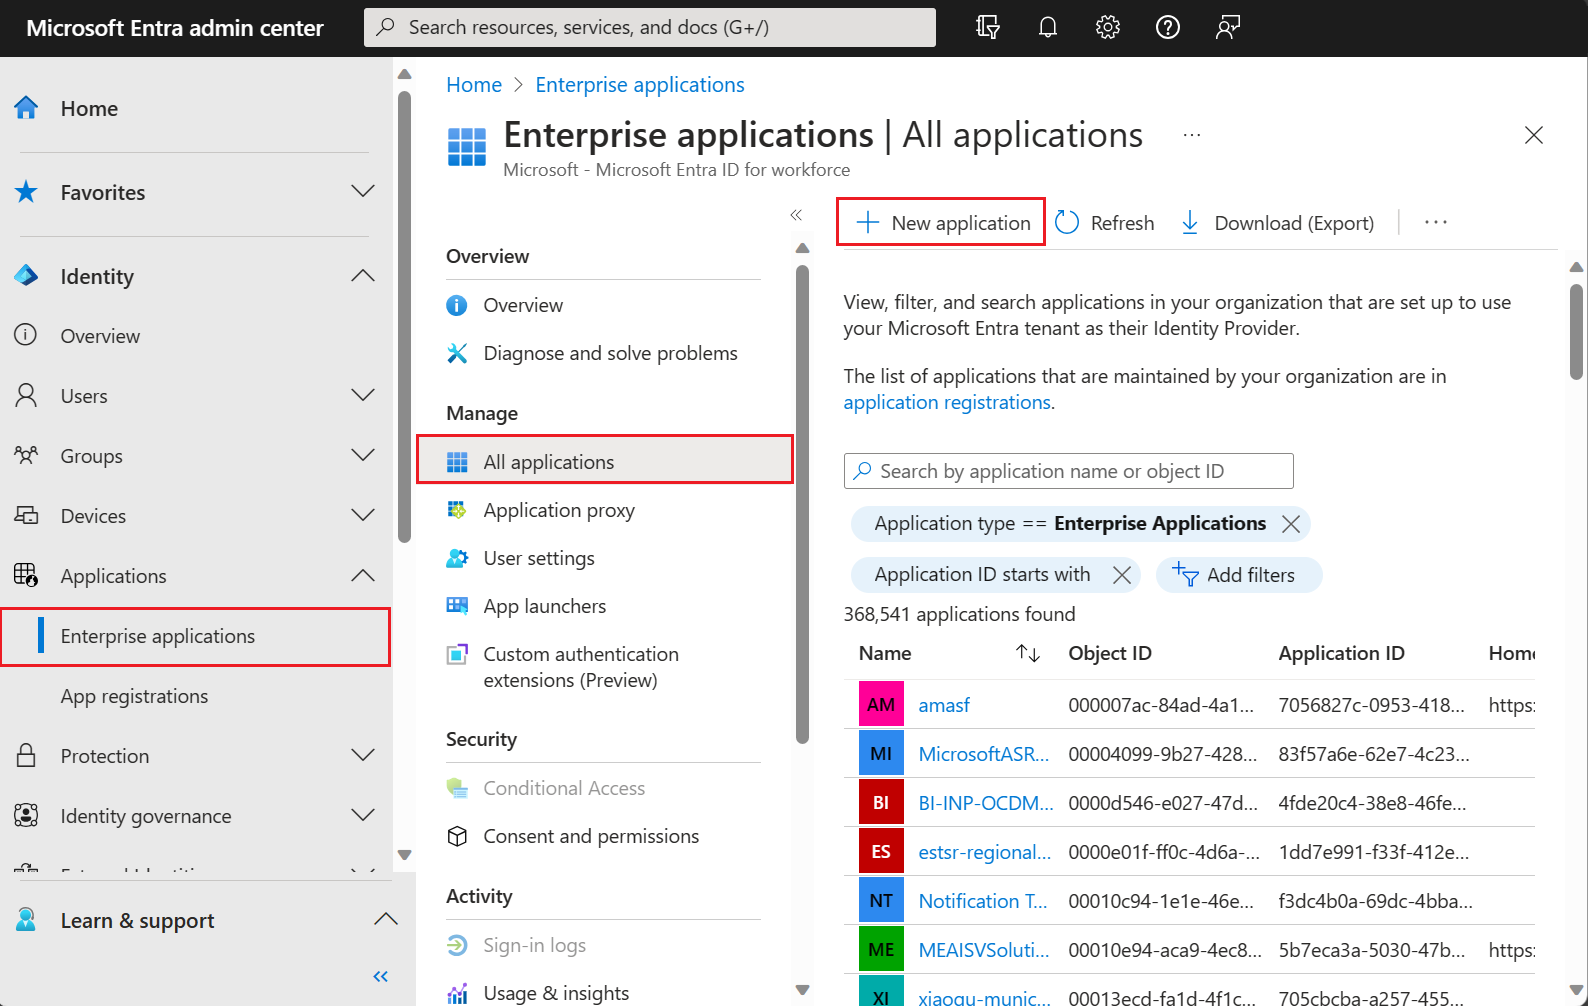 Capture d’écran montrant le volet de la galerie d’applications Microsoft Entra dans le [centre d’administration Microsoft Entra](https://entra.microsoft.com).